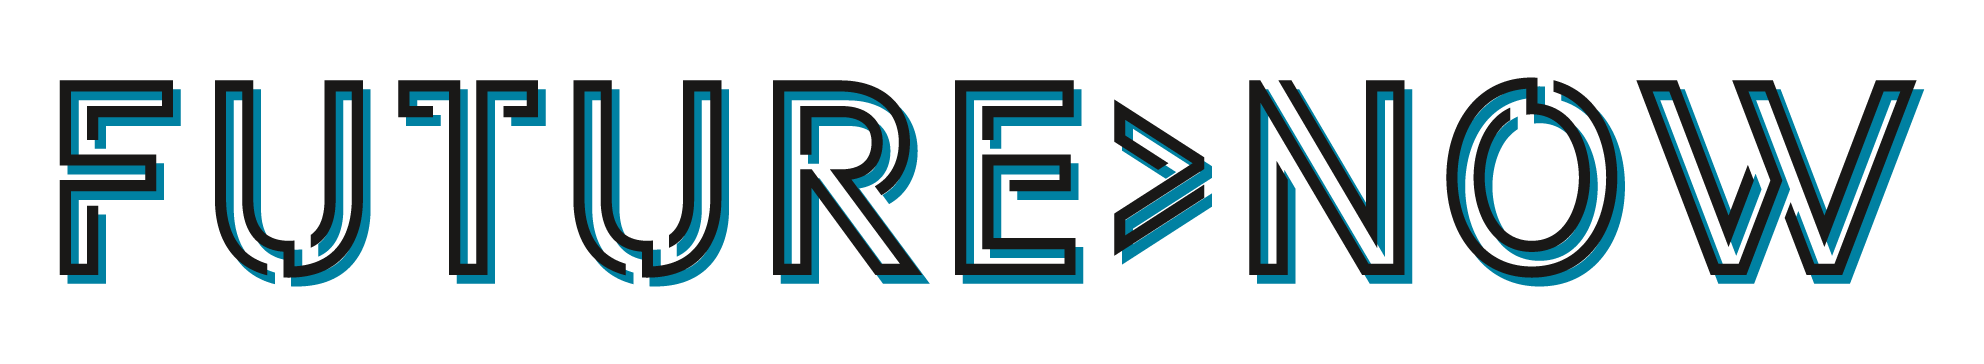 Future-now-logo-XL